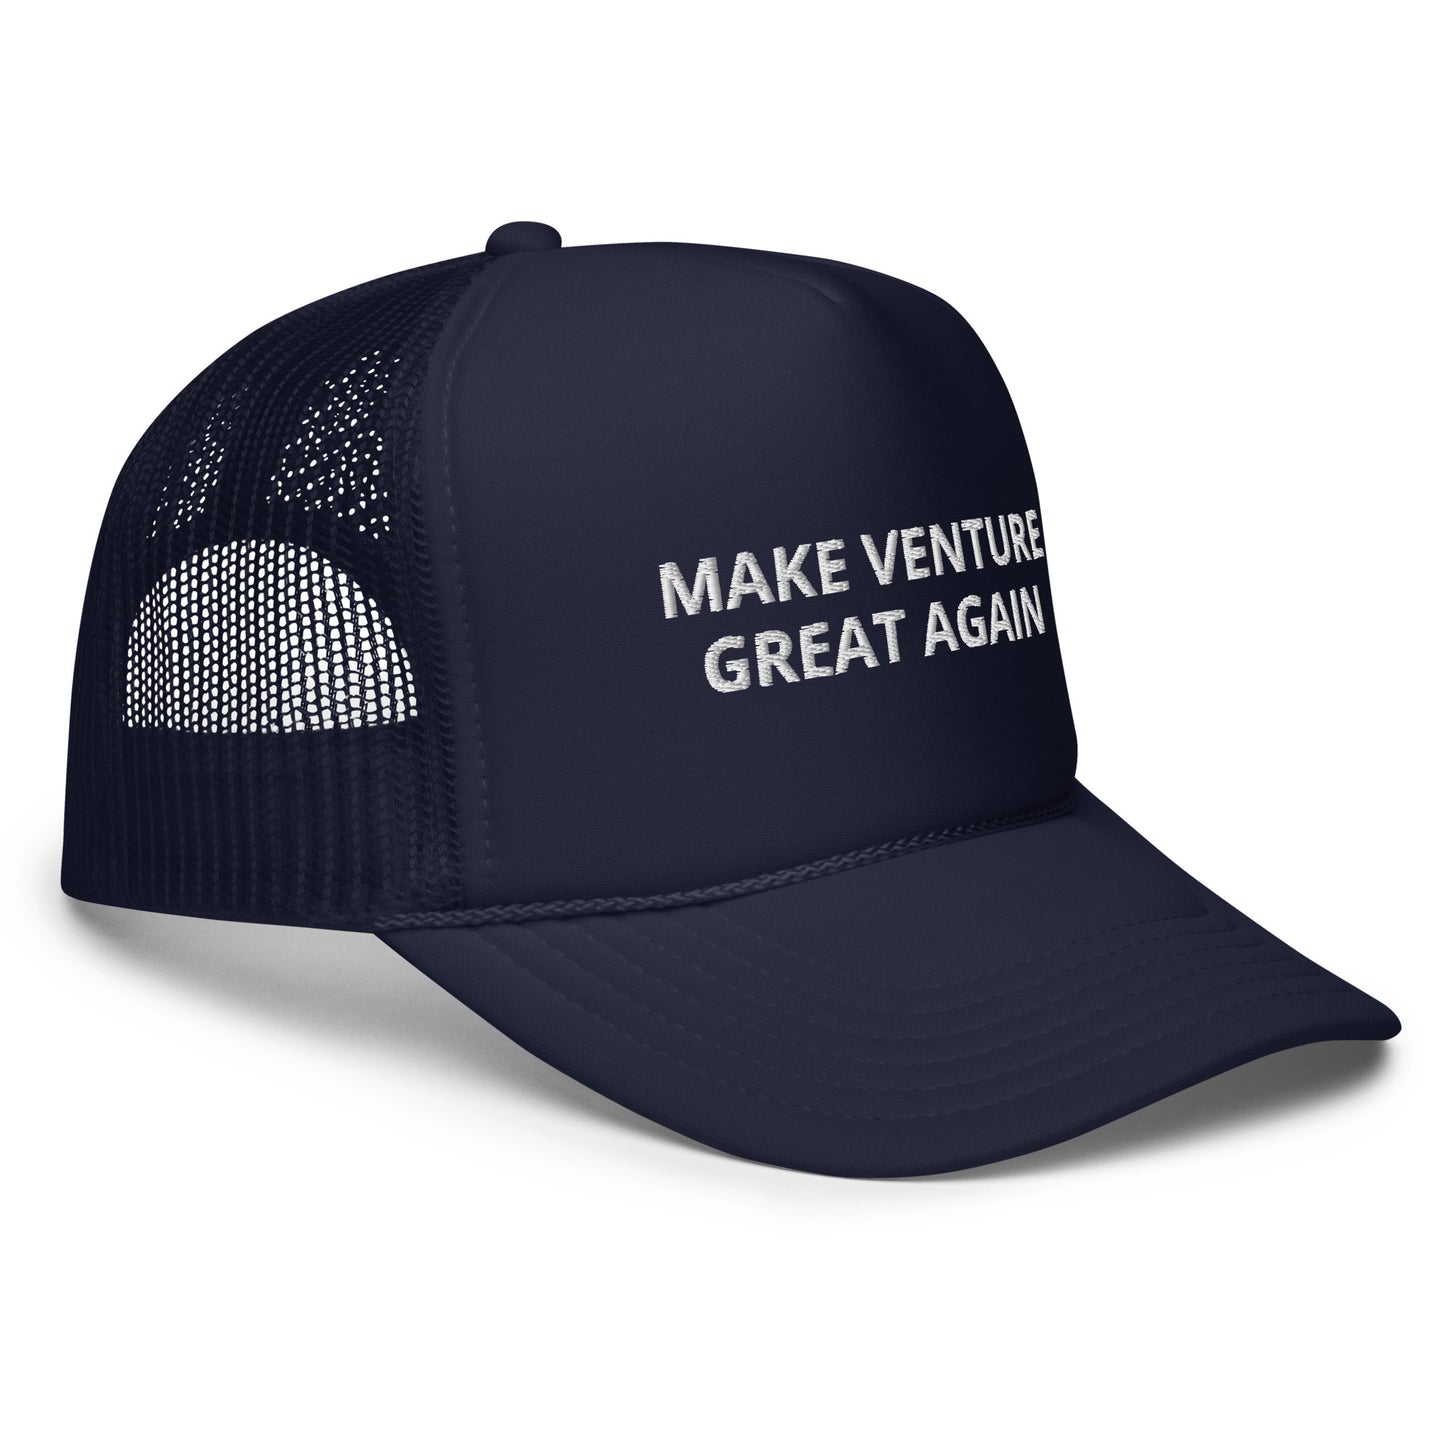 MAKE VENTURE GREAT AGAIN Foam Trucker Hat